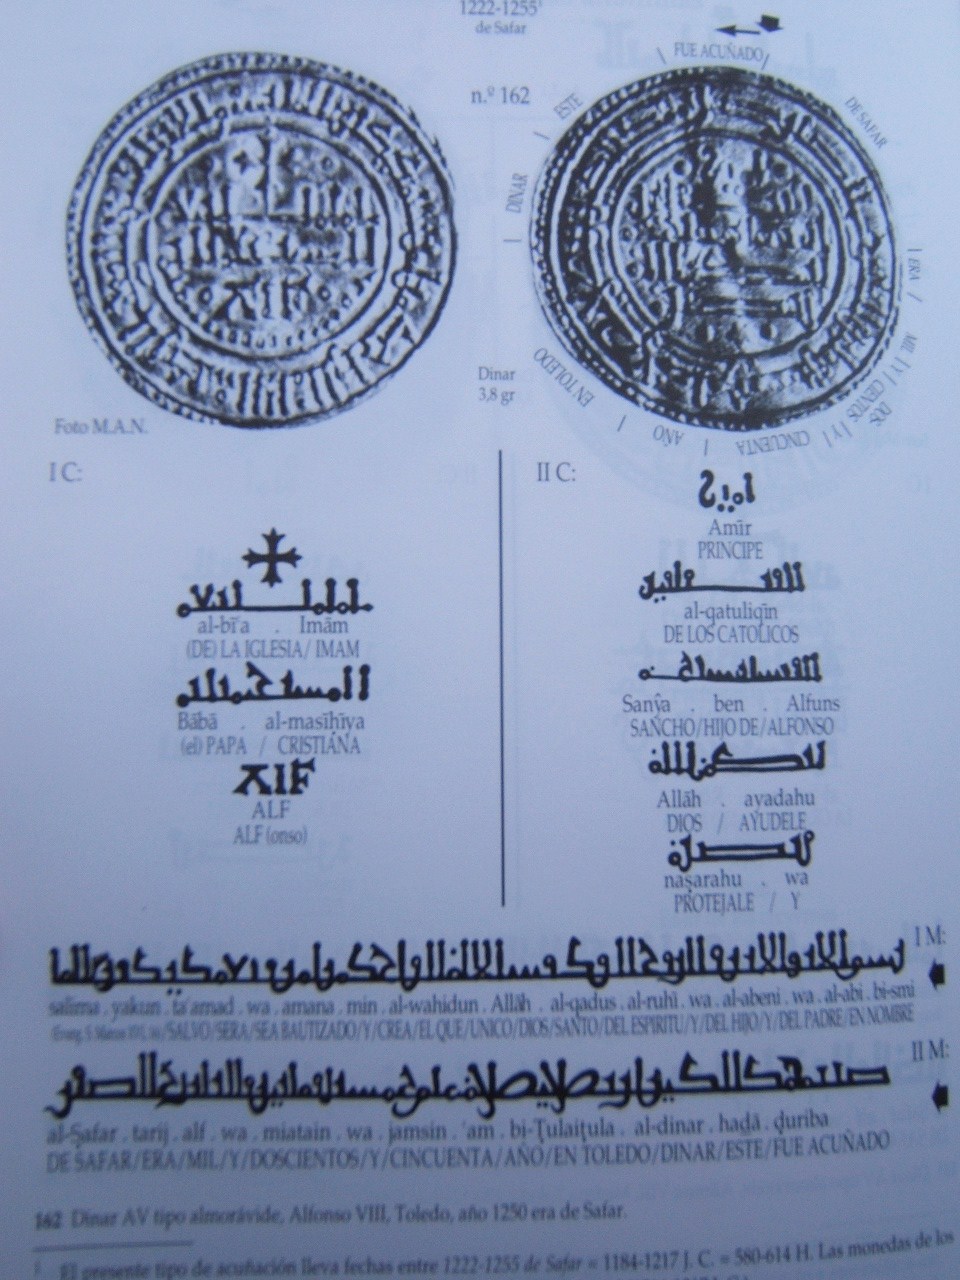 Morabetino de Alfonso VIII, 1223 de Safar (1185 d.C.) - Página 3 Marab2b001